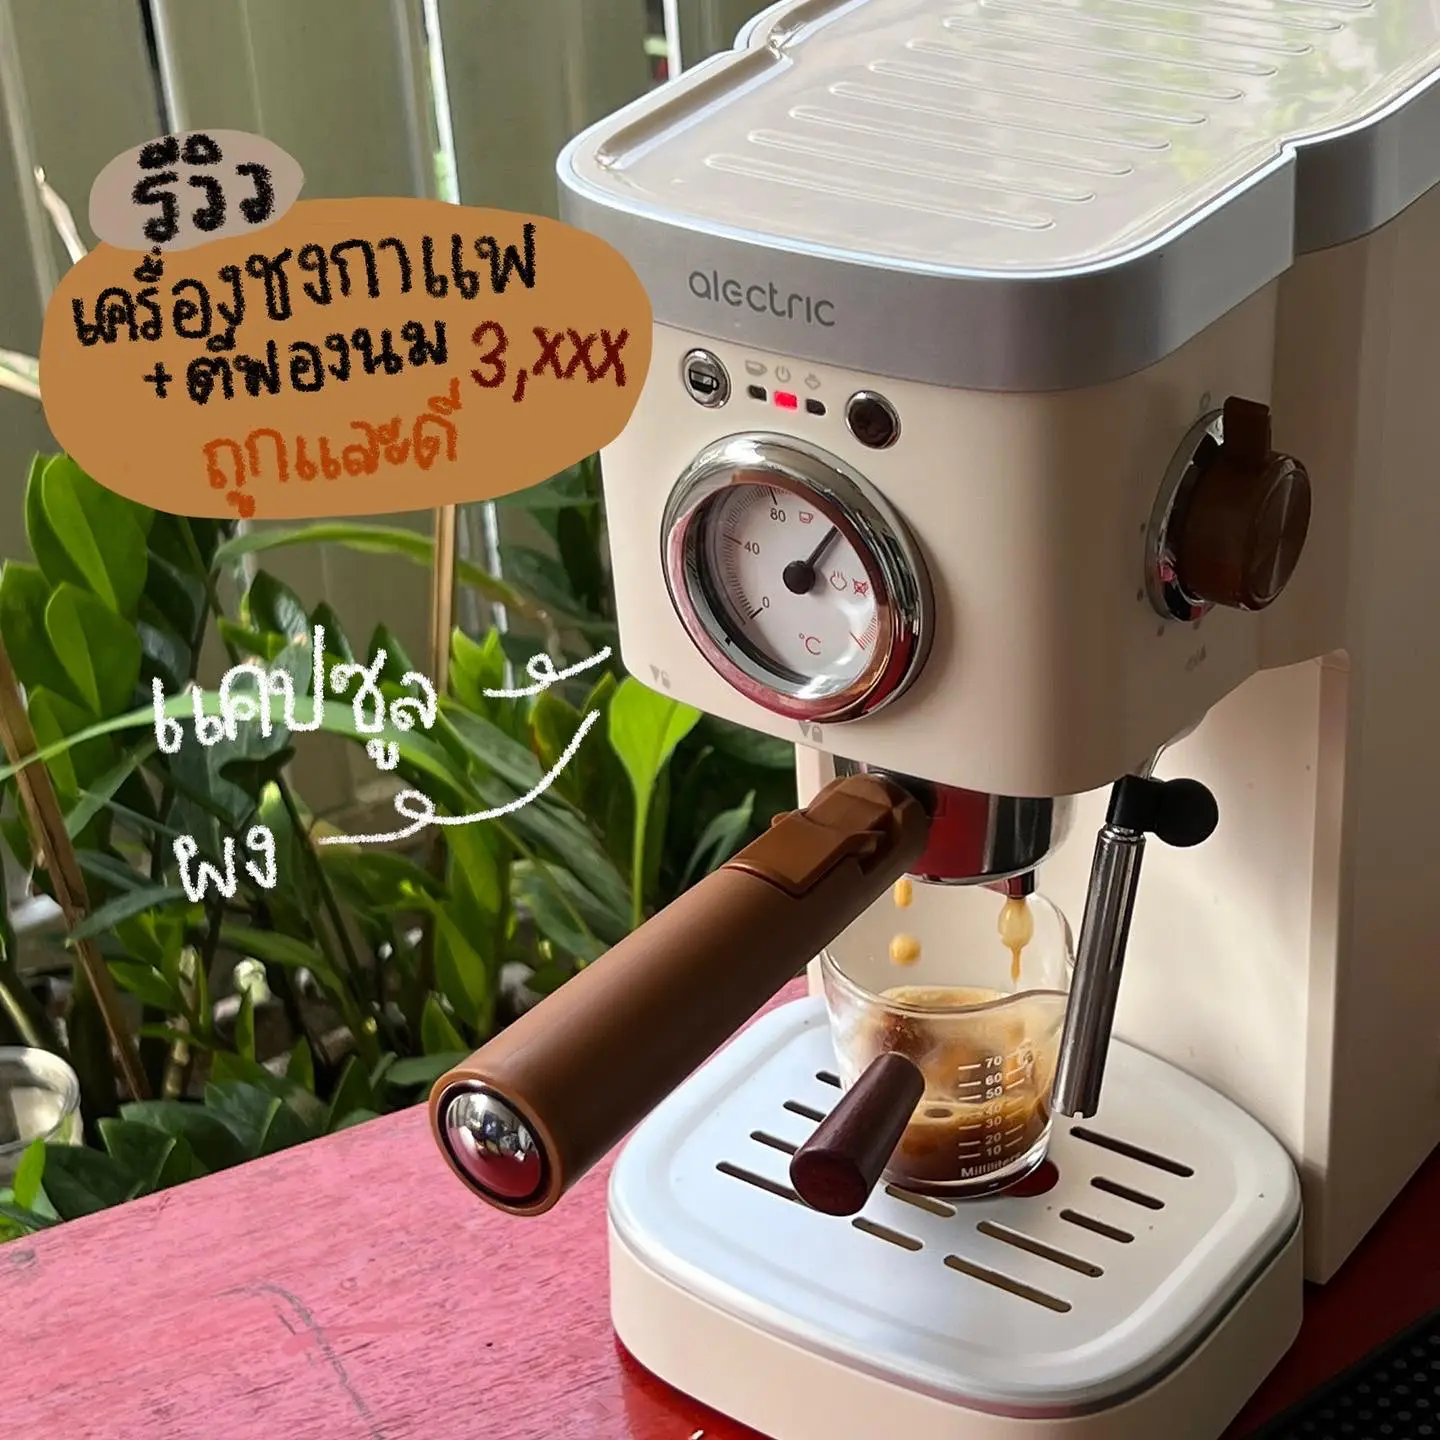 Ariete Manual Coffee Machine, Ariete Classica Espresso